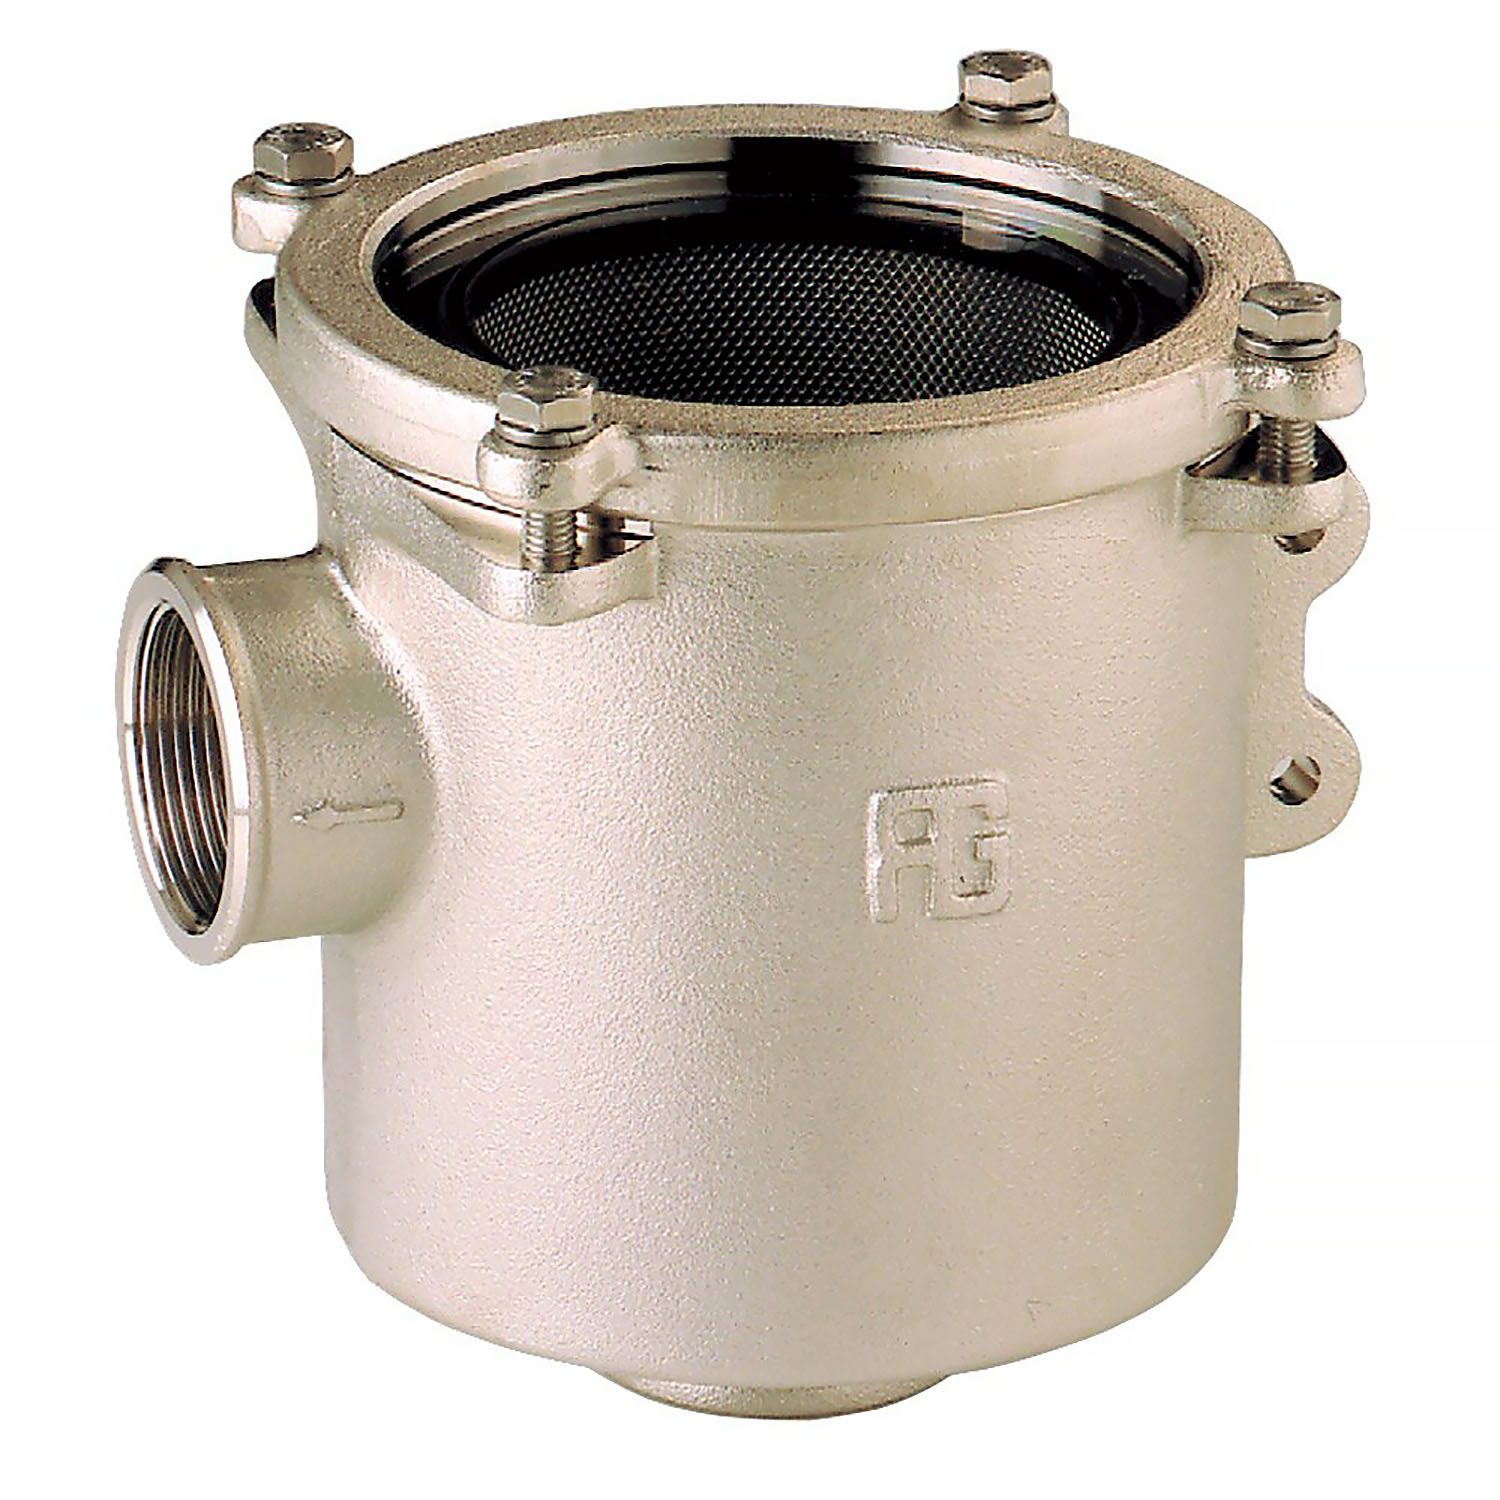 Фильтр водяной системы охлаждения двигателя Guidi Marine Ionio 1164 1164#220006 1" 7950 - 25500 л/час